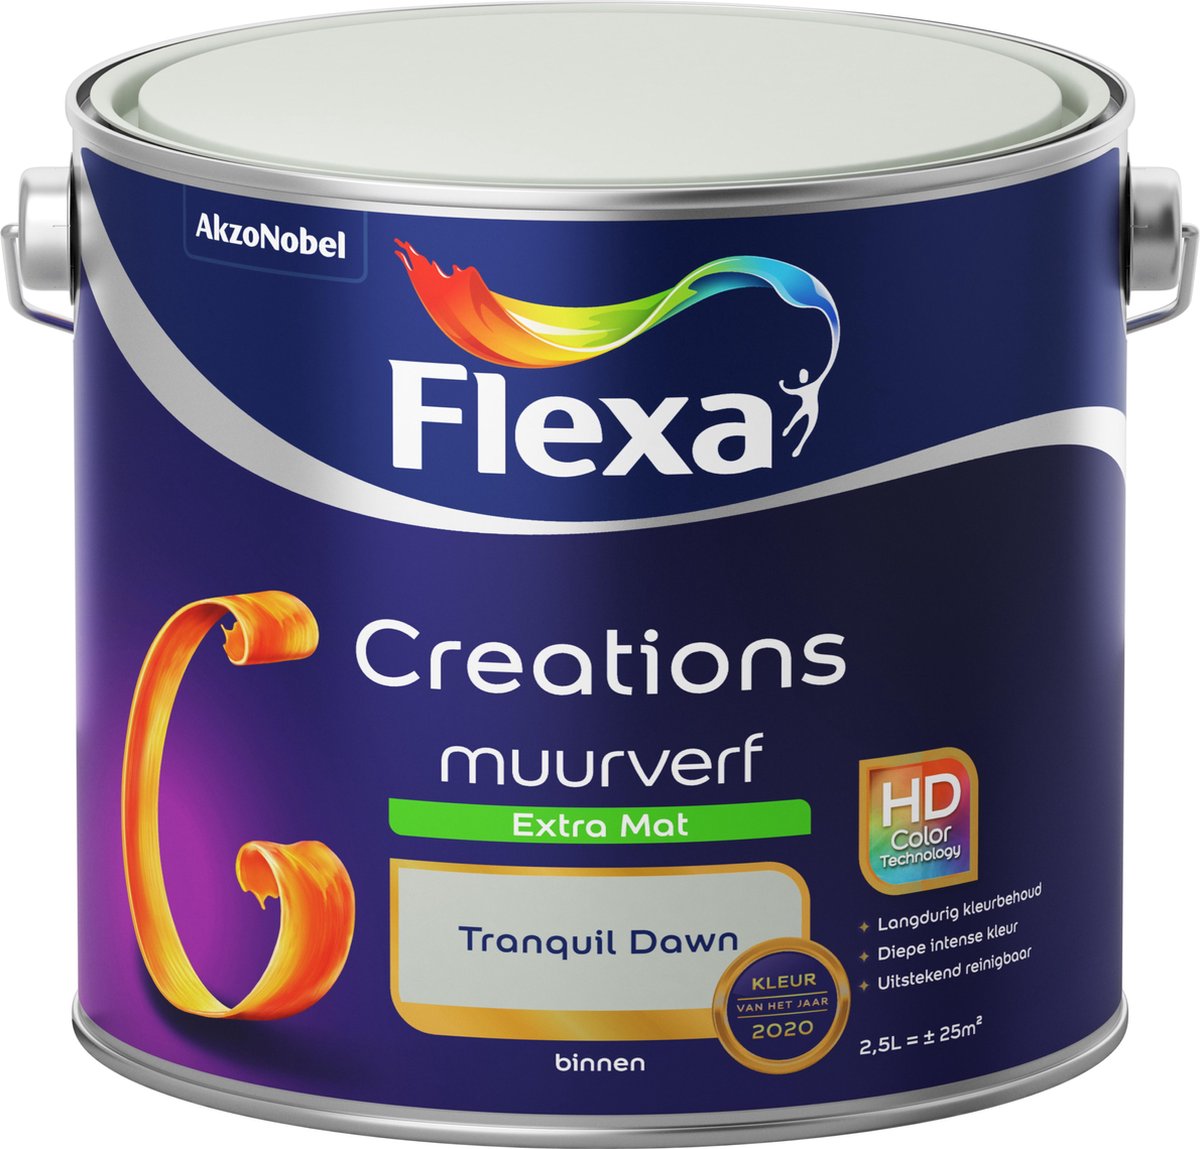 Flexa Creations - Muurverf Extra Mat - Tranquil Dawn - Kleur van het Jaar 2020 - Groen - 2,5 liter- - Flexa